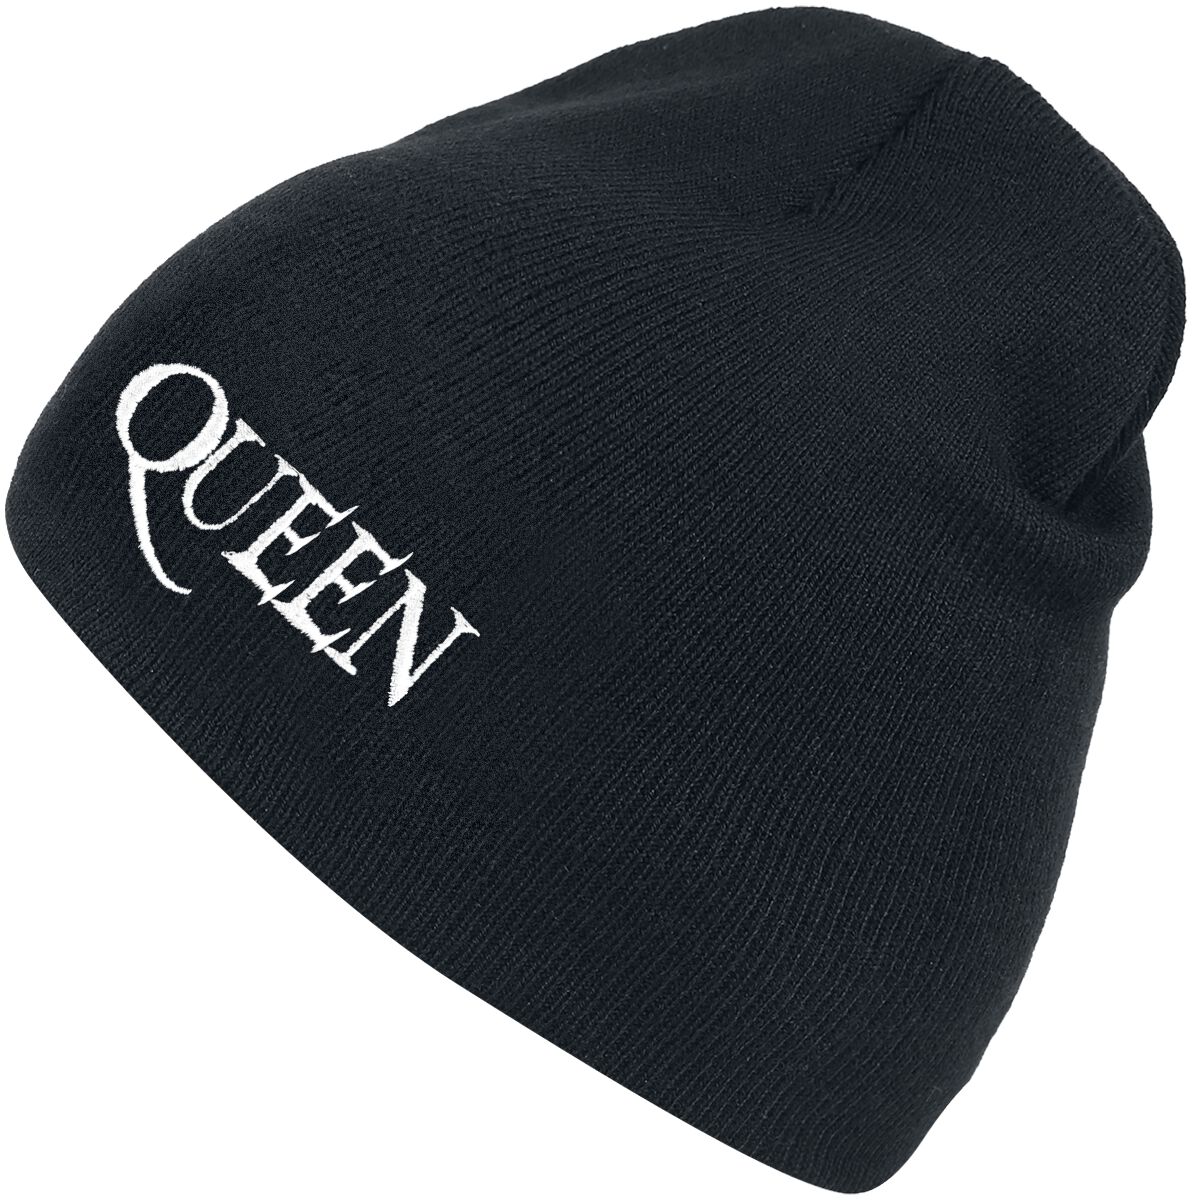 Queen Logo Mütze schwarz